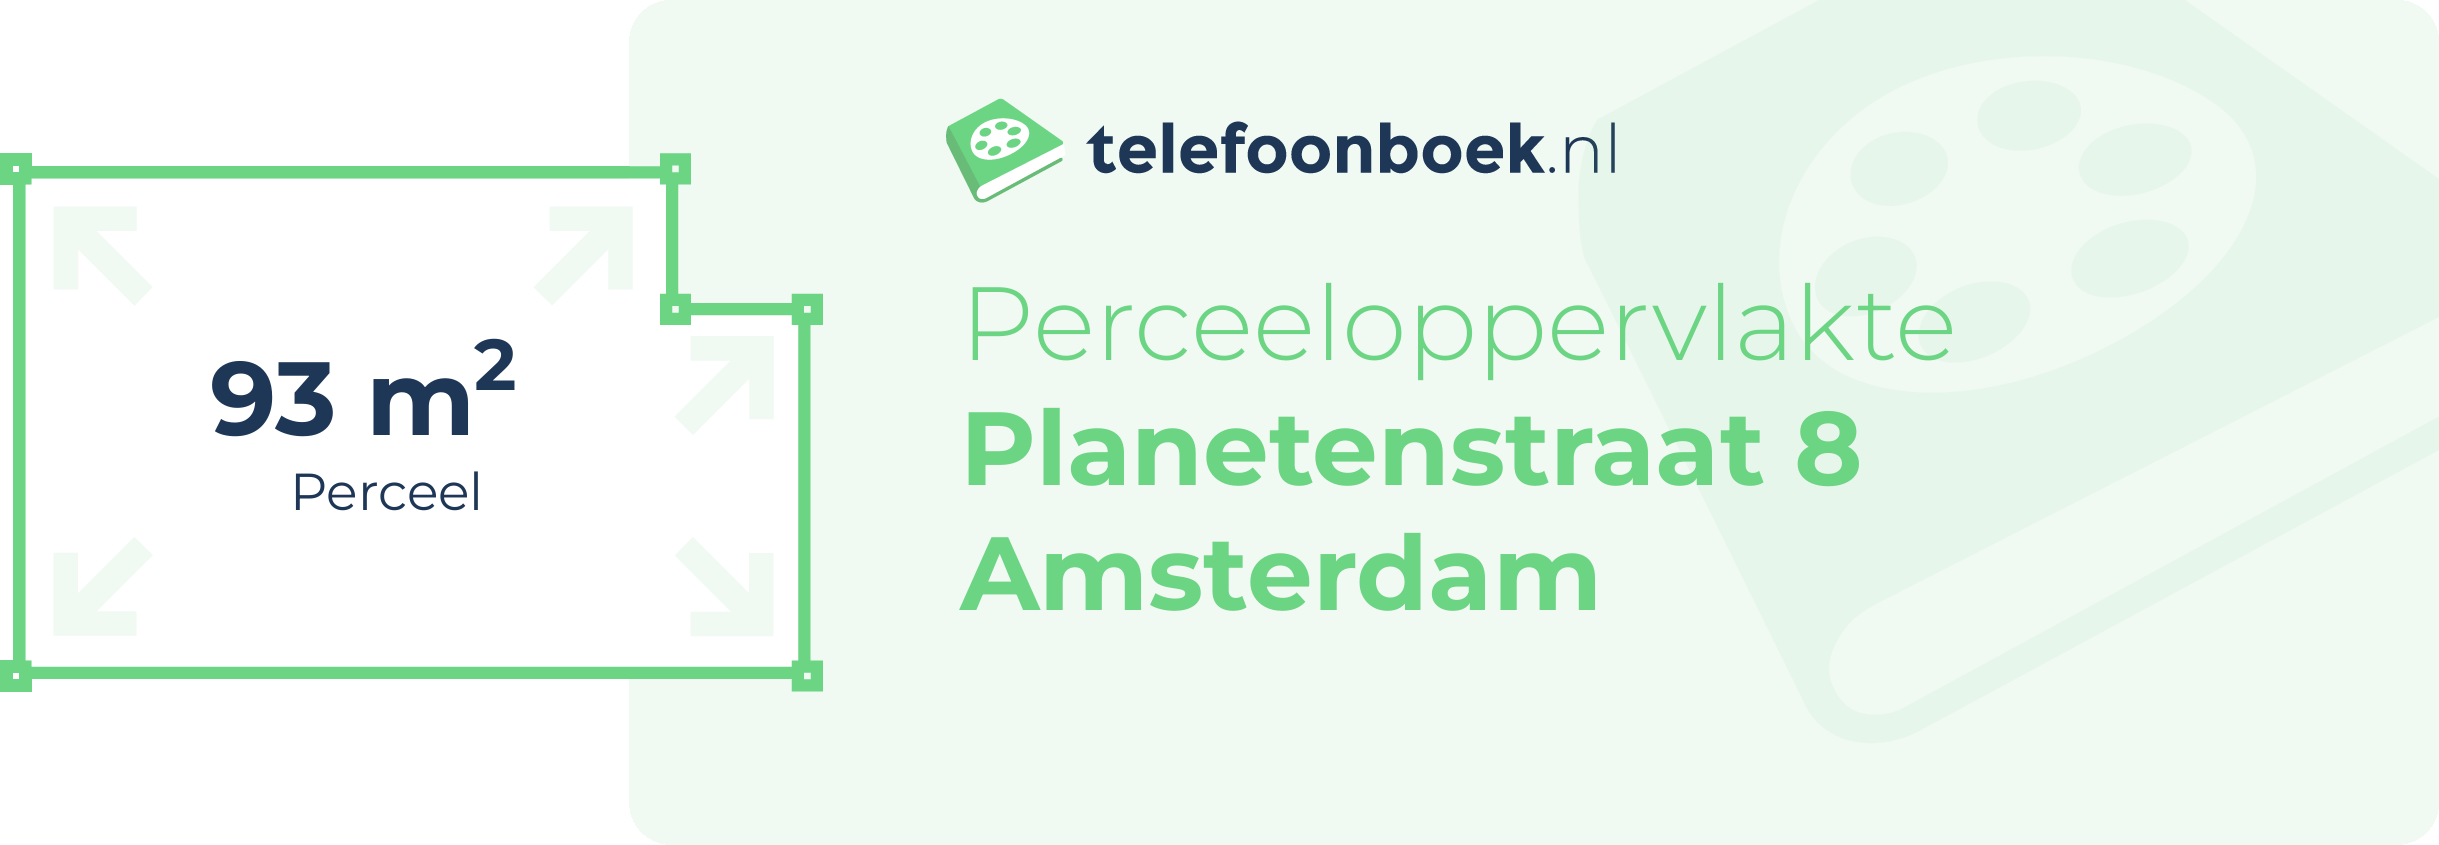 Perceeloppervlakte Planetenstraat 8 Amsterdam